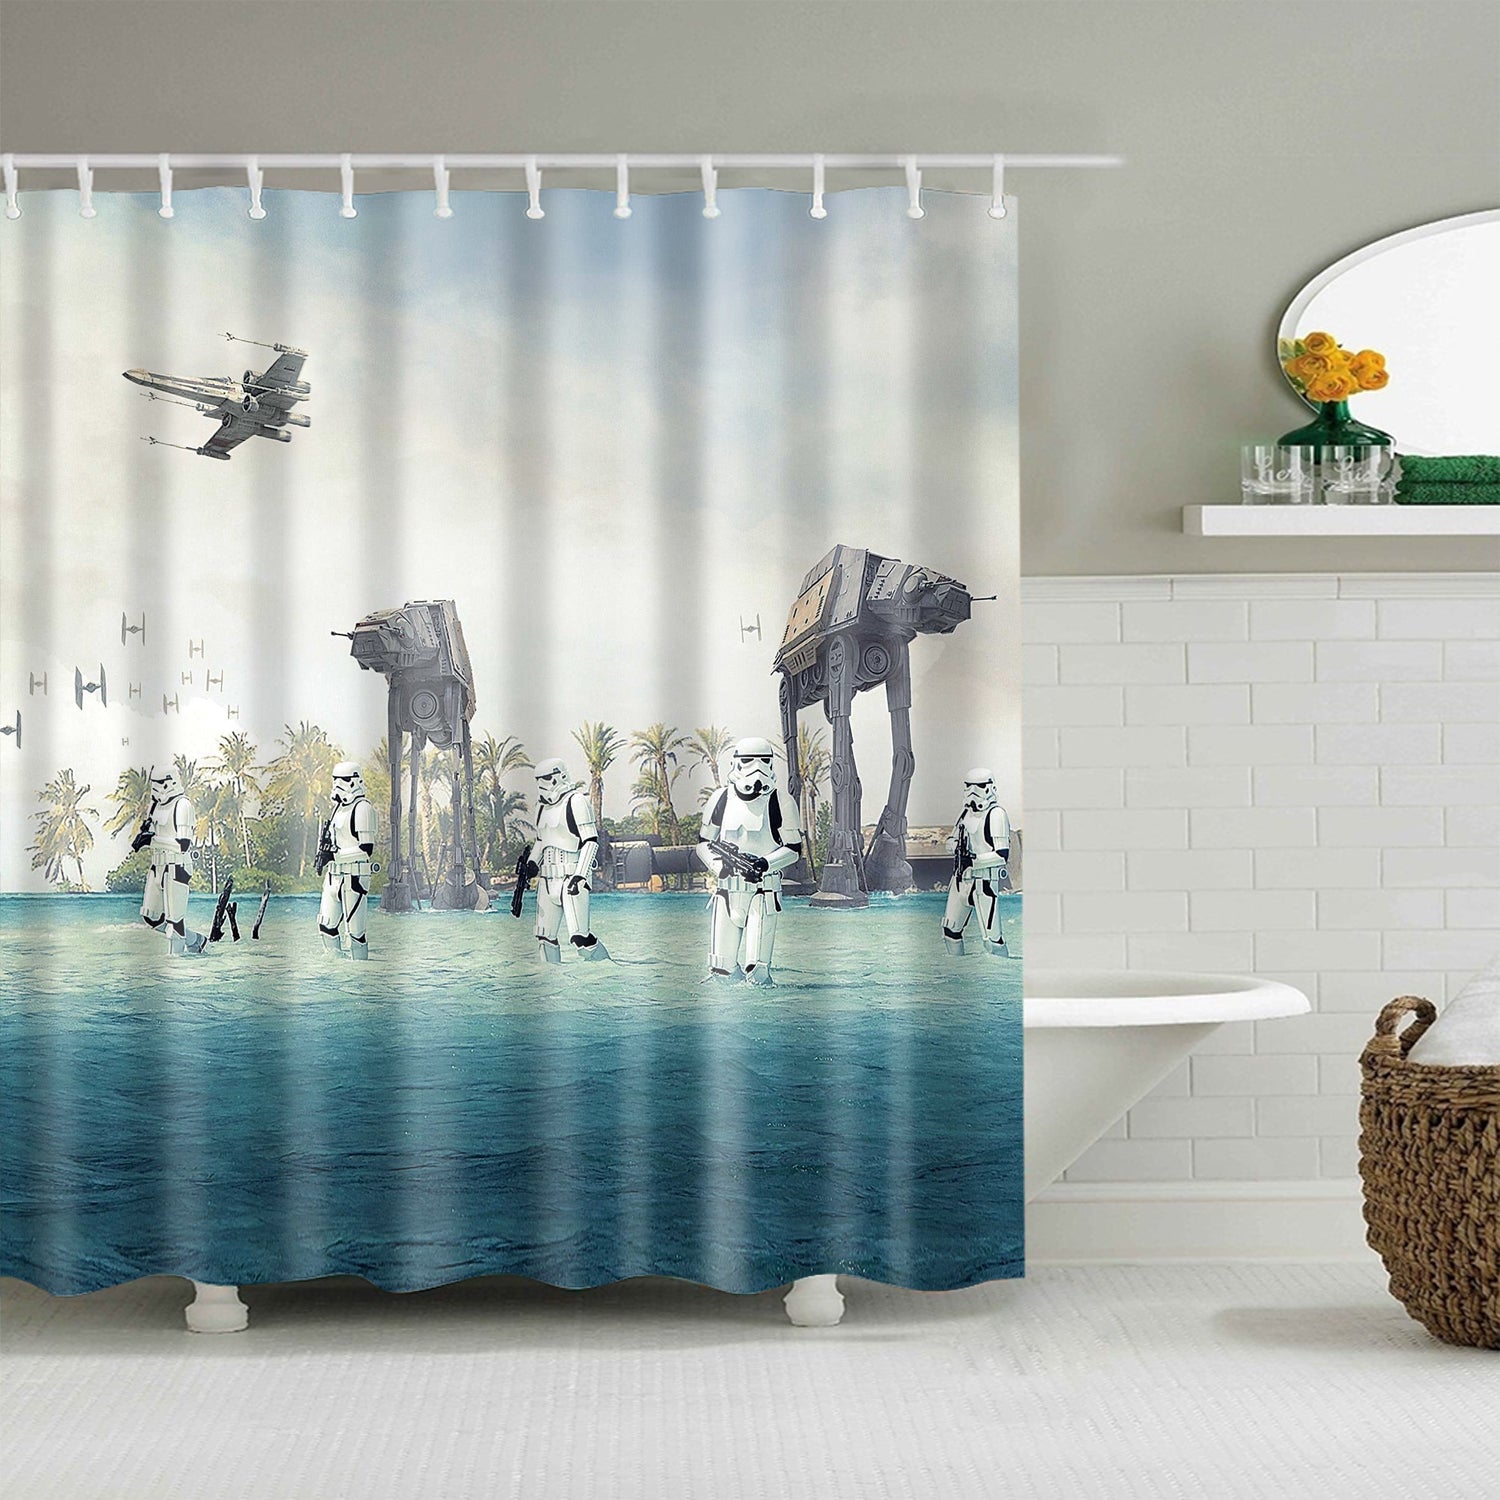 star wars shower curtain amazon